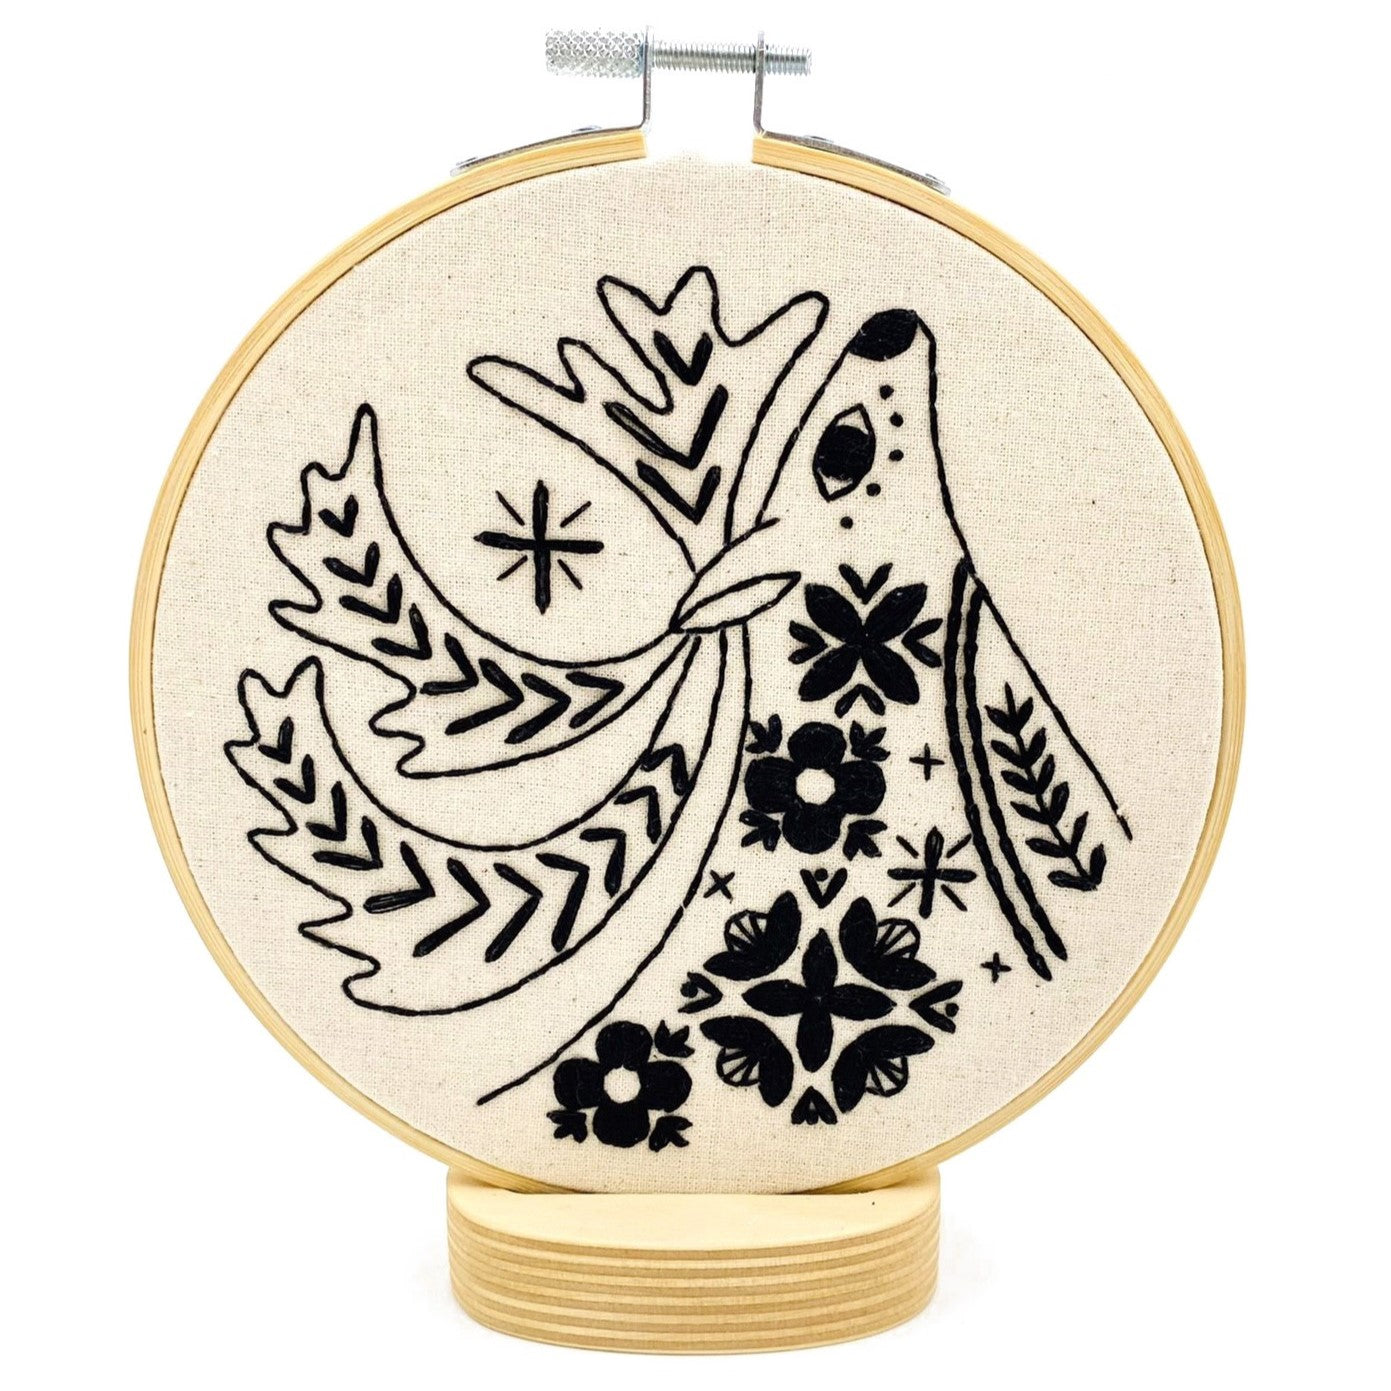 Folk Caribou Embroidery Kit - Hook, Line & Tinker